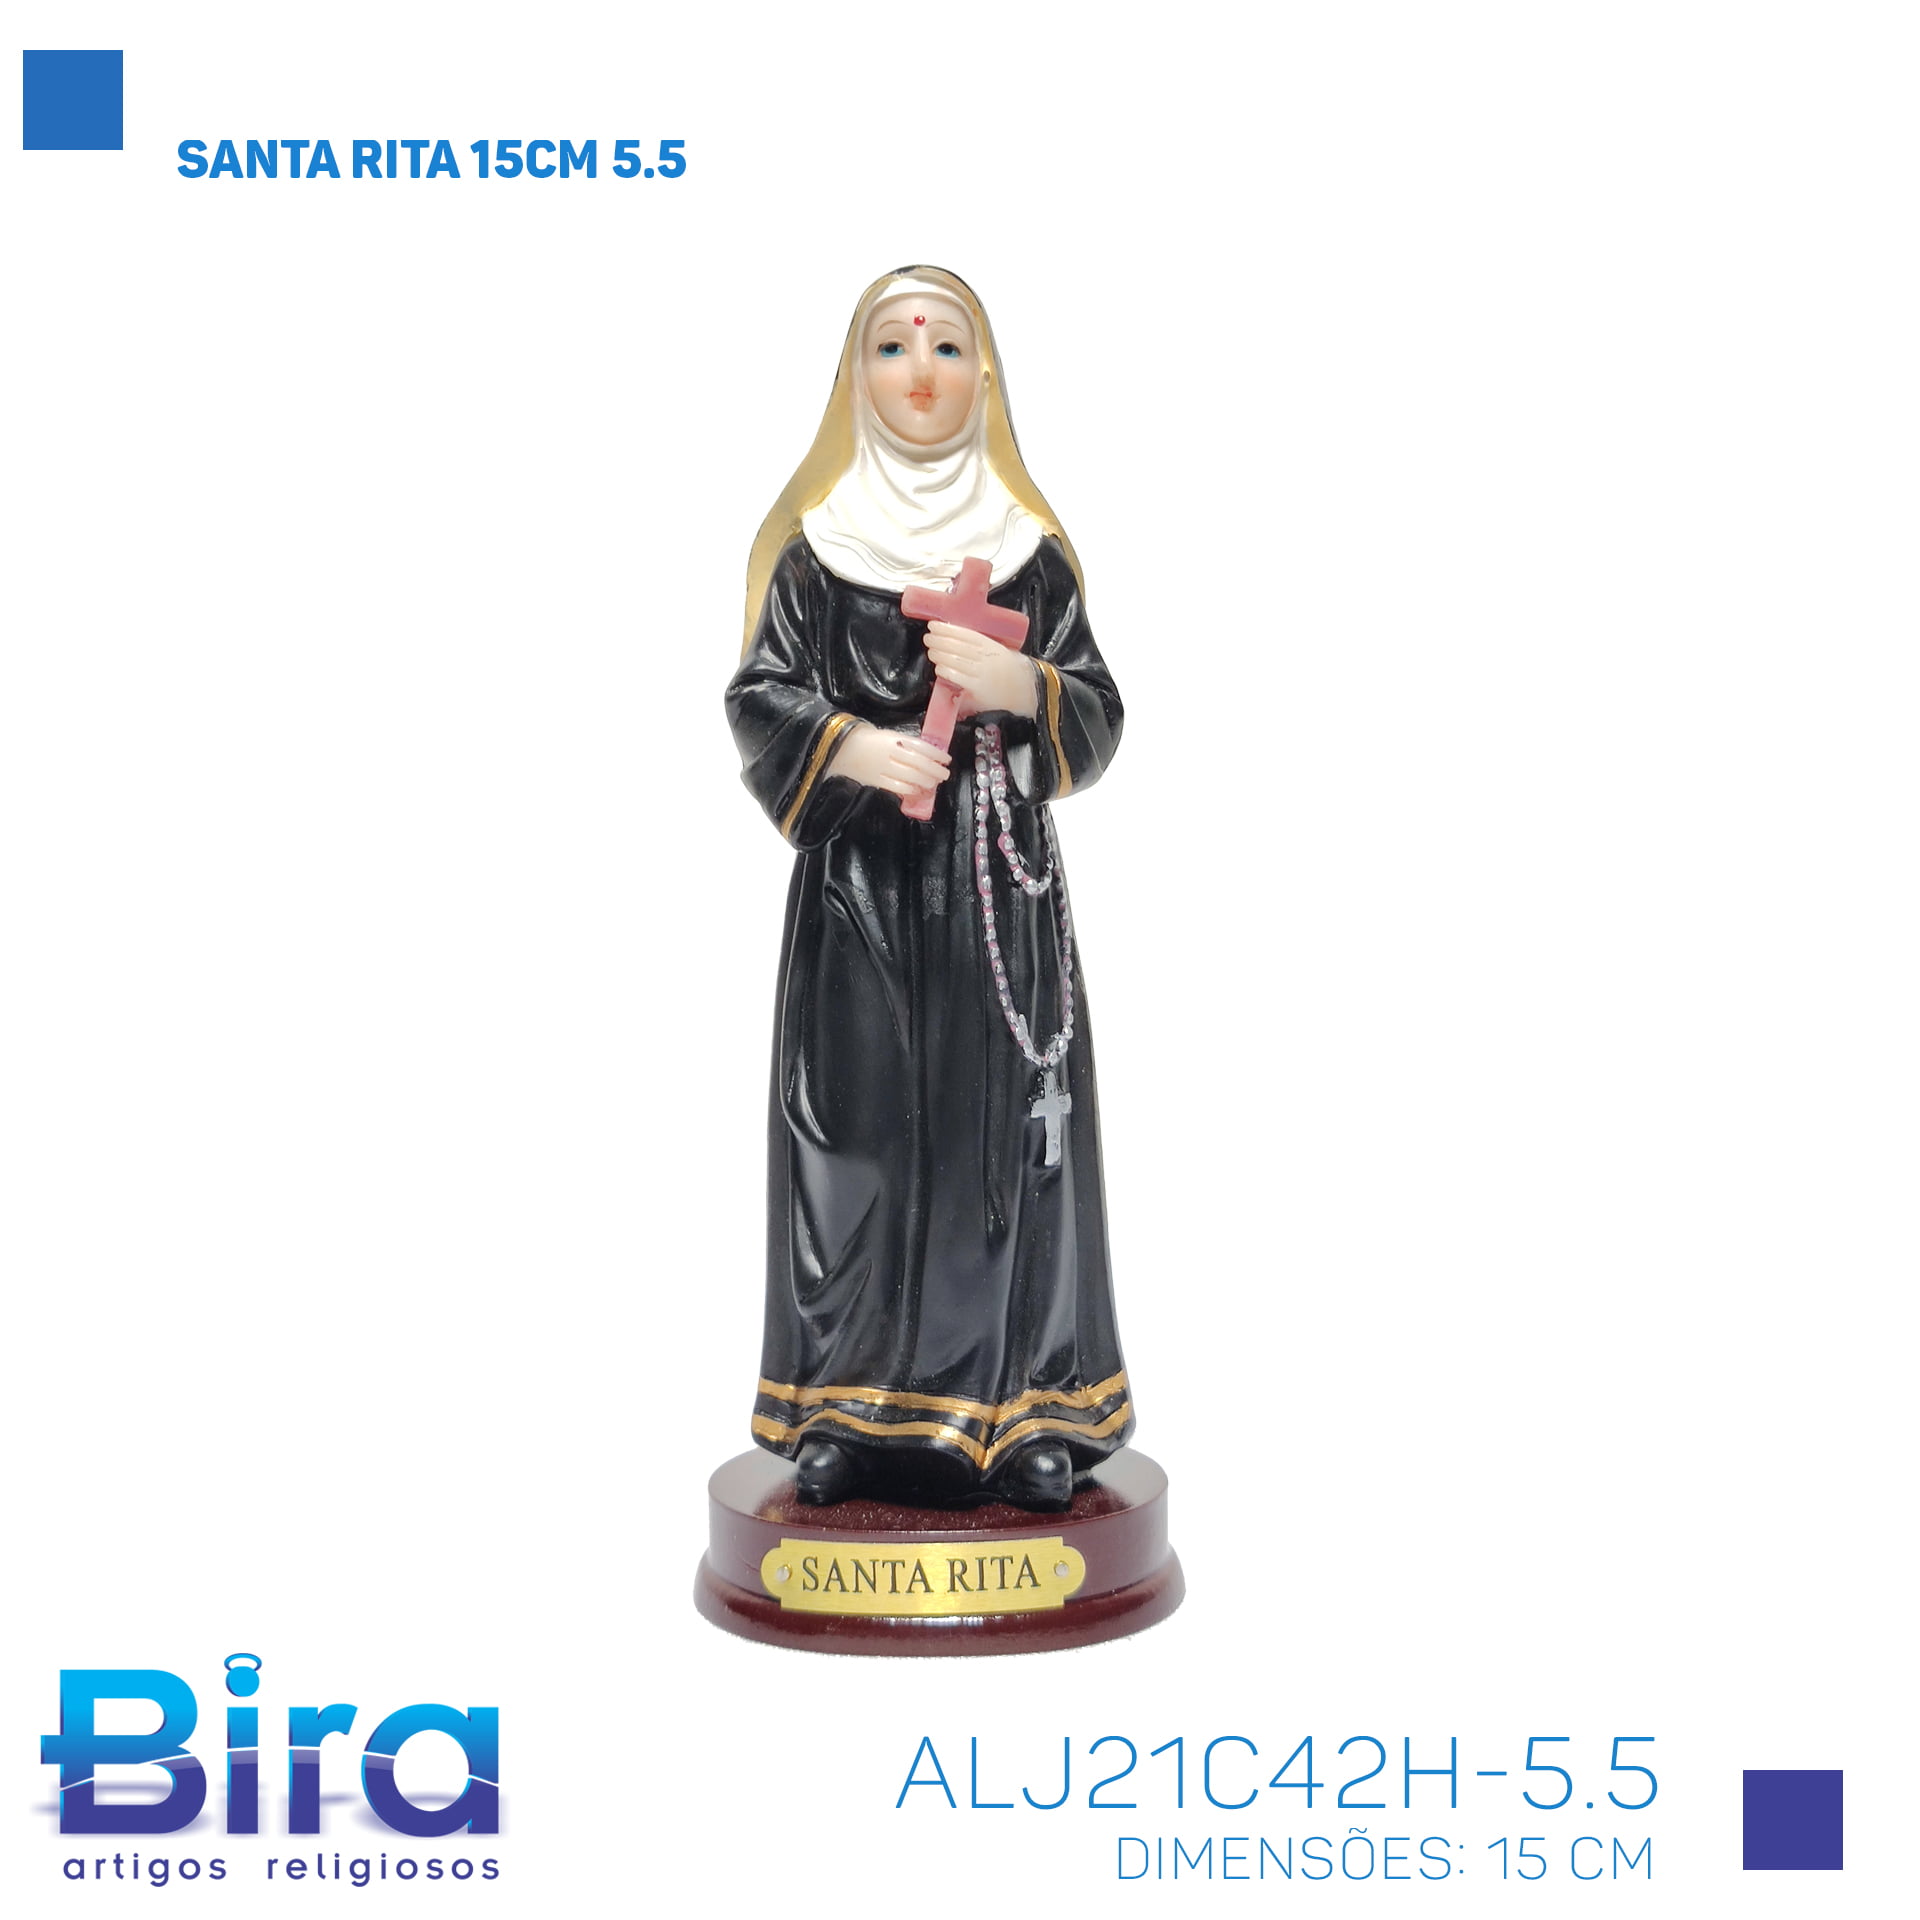 Bira Artigos Religiosos - SANTA RITA 15CM 5.5 Cod. ALJ21C42H-5.5